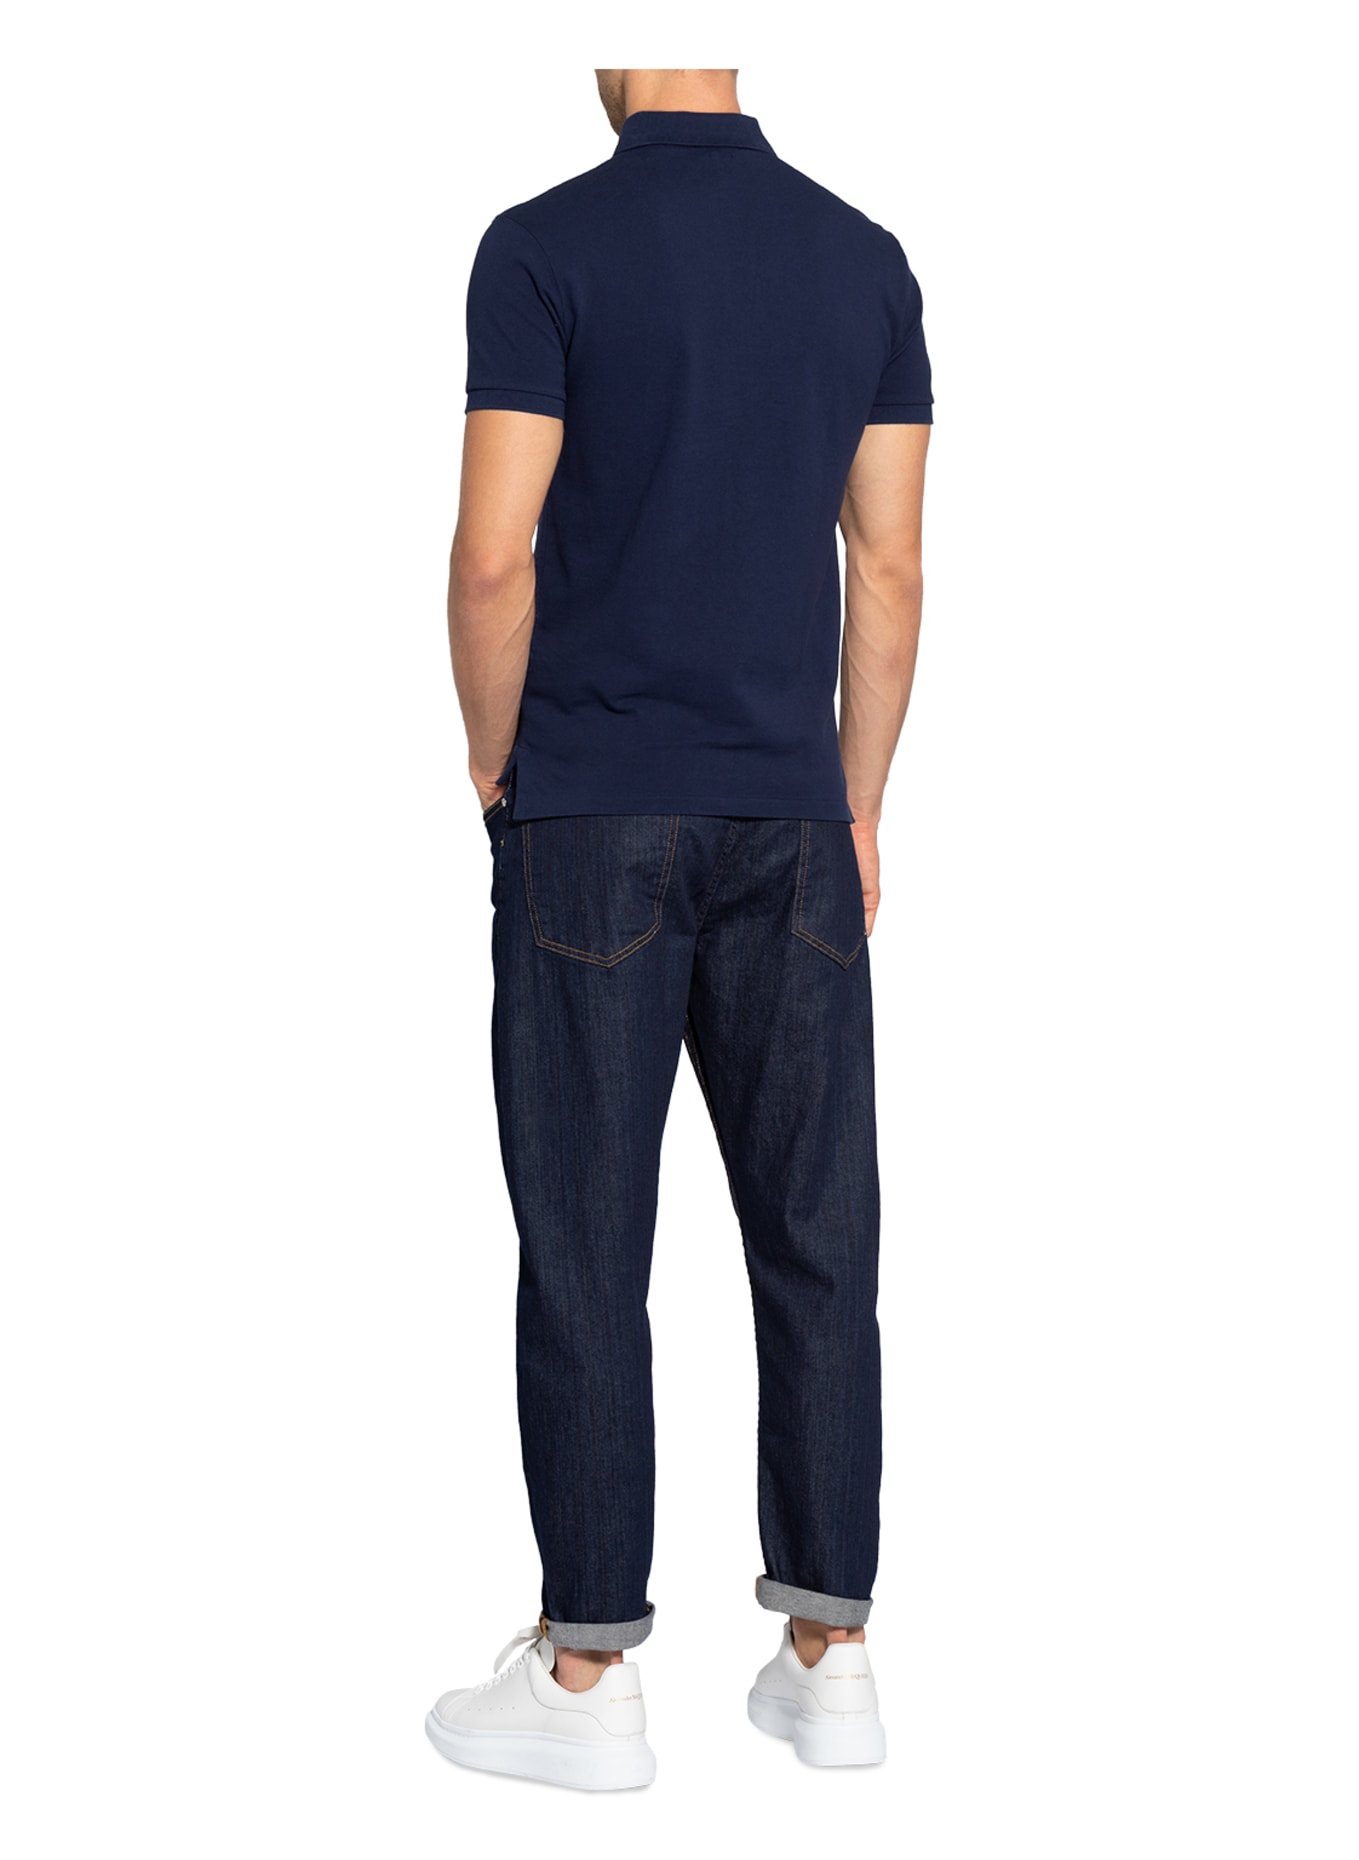 POLO RALPH LAUREN Piqué-Poloshirt Slim Fit, Farbe: DUNKELBLAU (Bild 3)